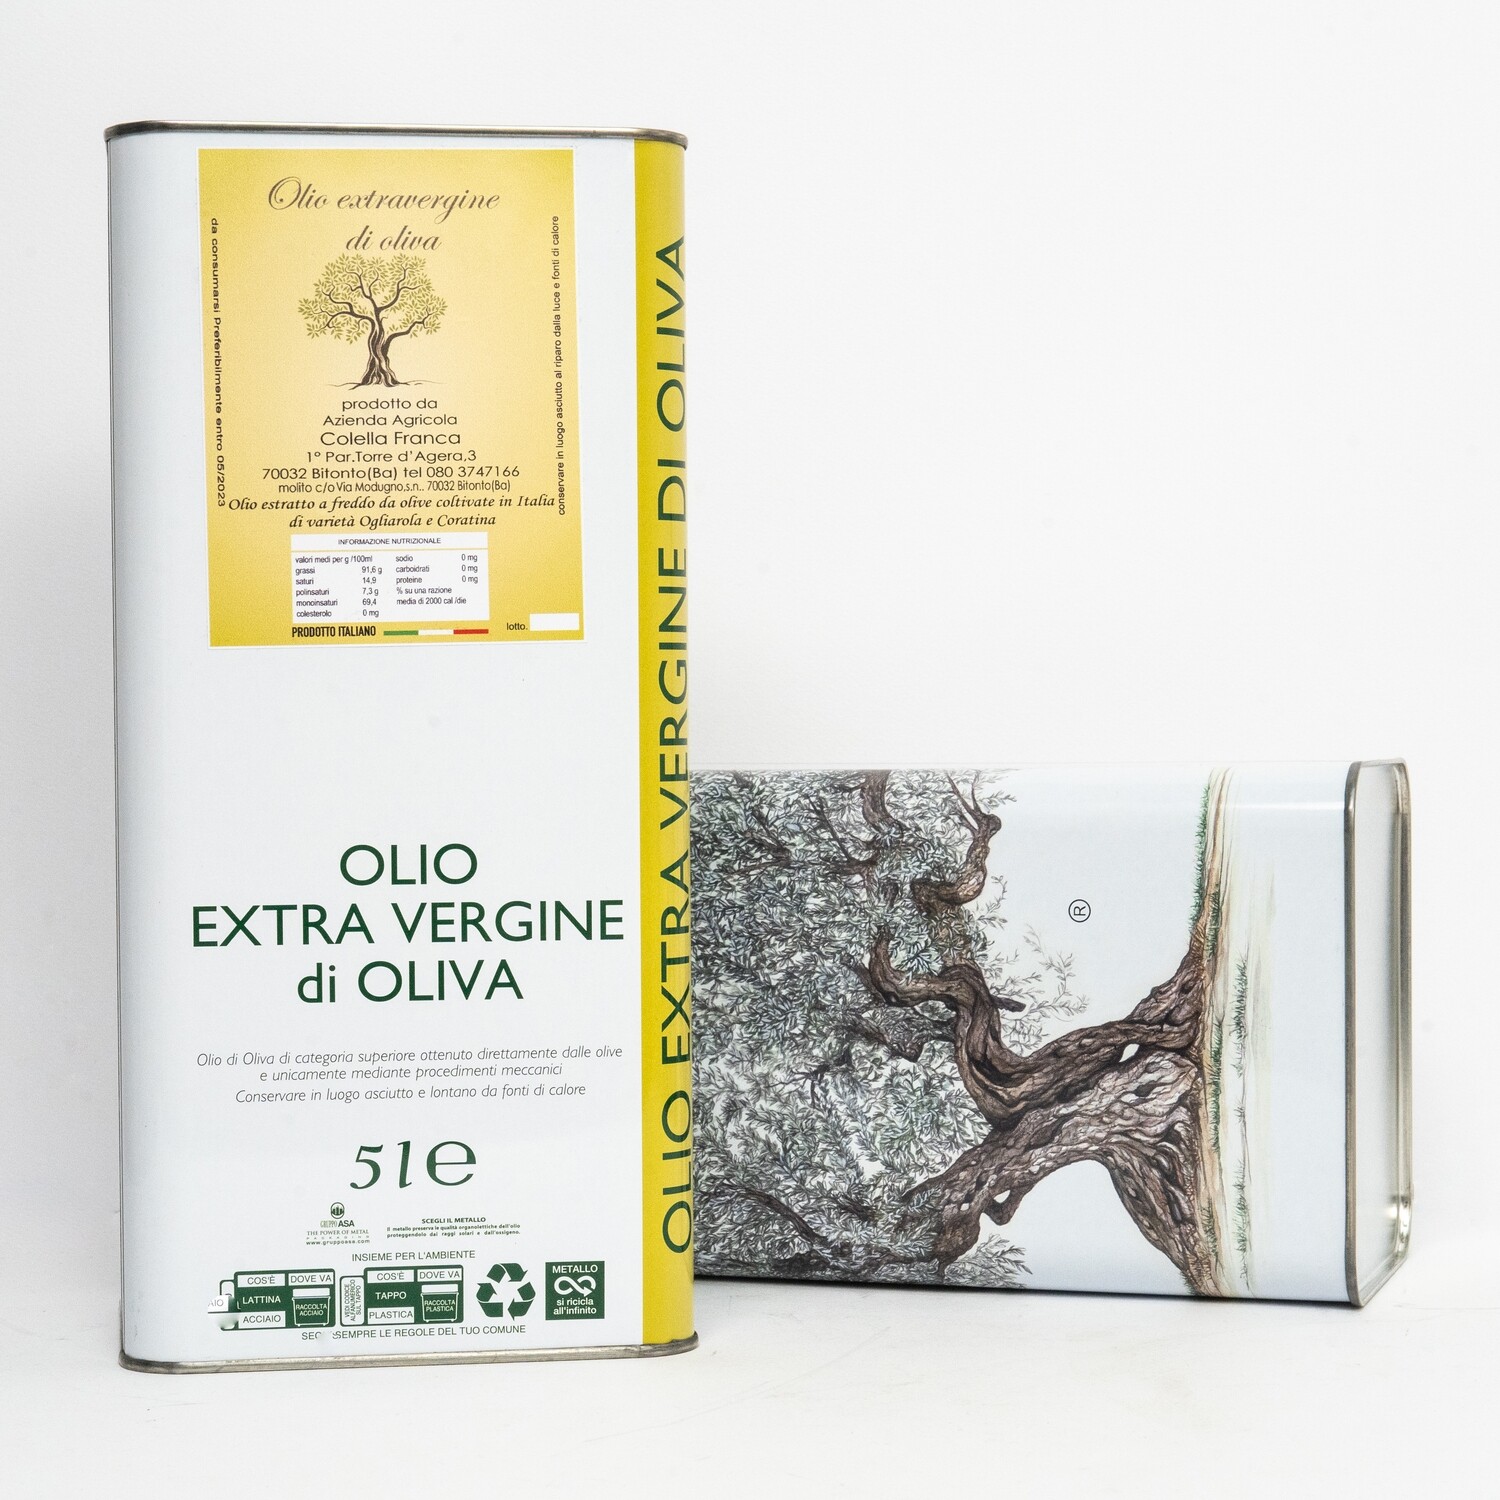 Olio extravergine di oliva blend Ogliarola-Coratina 2022